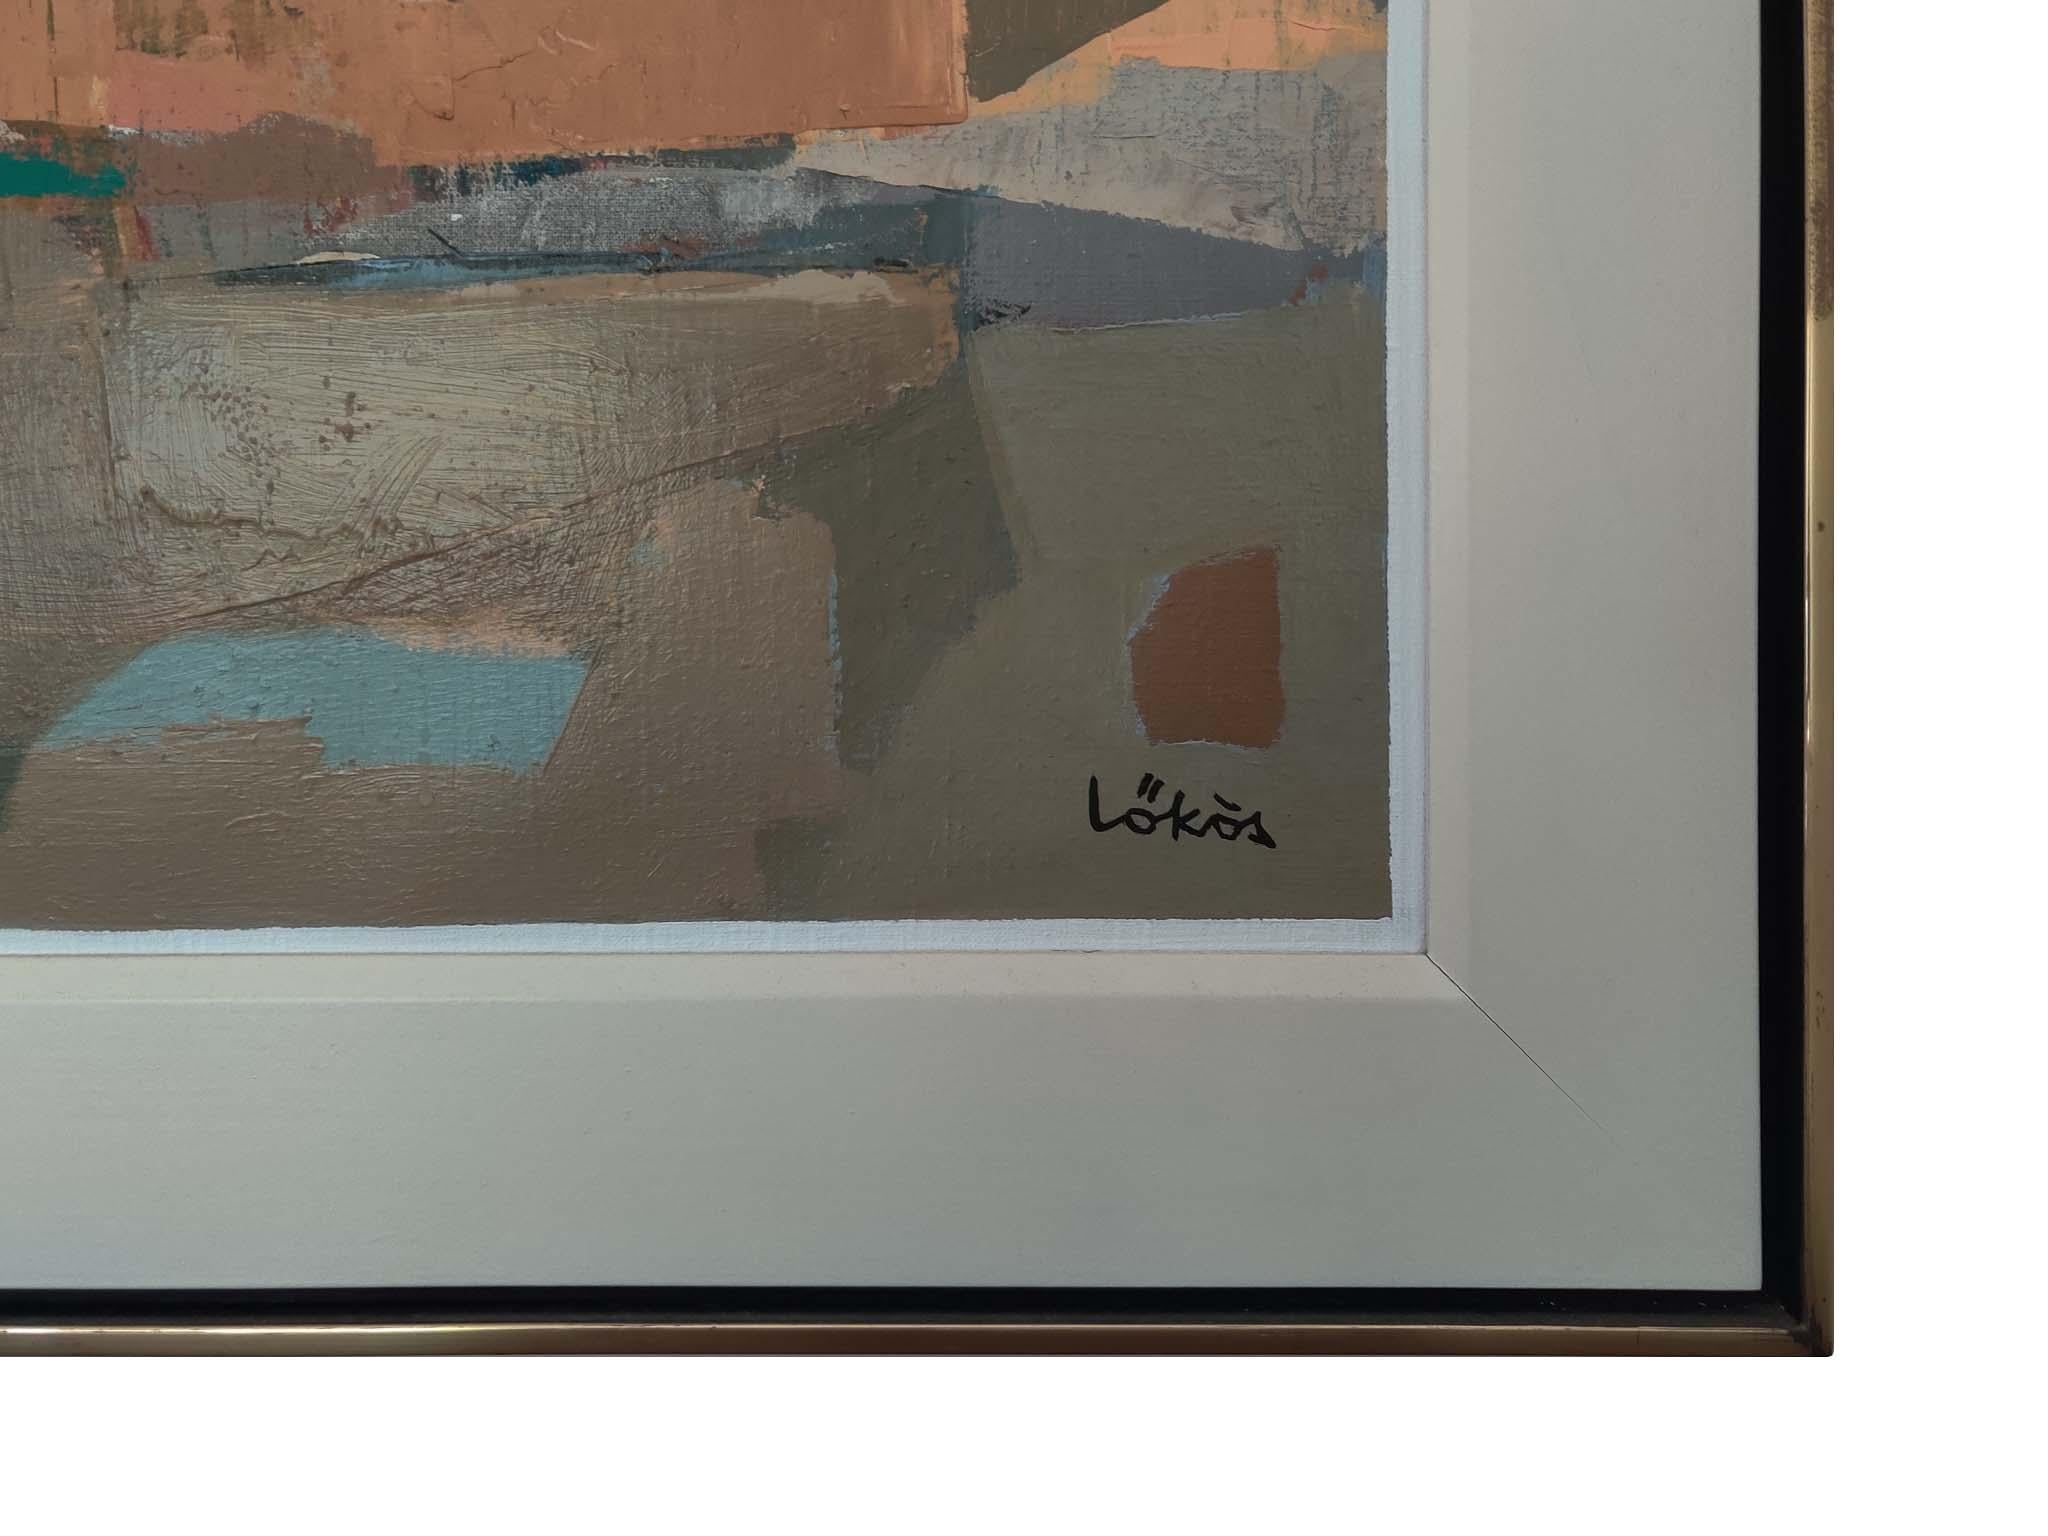 Beschreibung: Stefan Lokos (Ungar, 1913-1994) Abstraktes Ölgemälde auf Leinwand. Es handelt sich um ein unsigniertes Werk, das an eine toskanische Landschaft erinnert. Es handelt sich um ein hochwertiges Gemälde mit Pigmenten, die sowohl mit dem